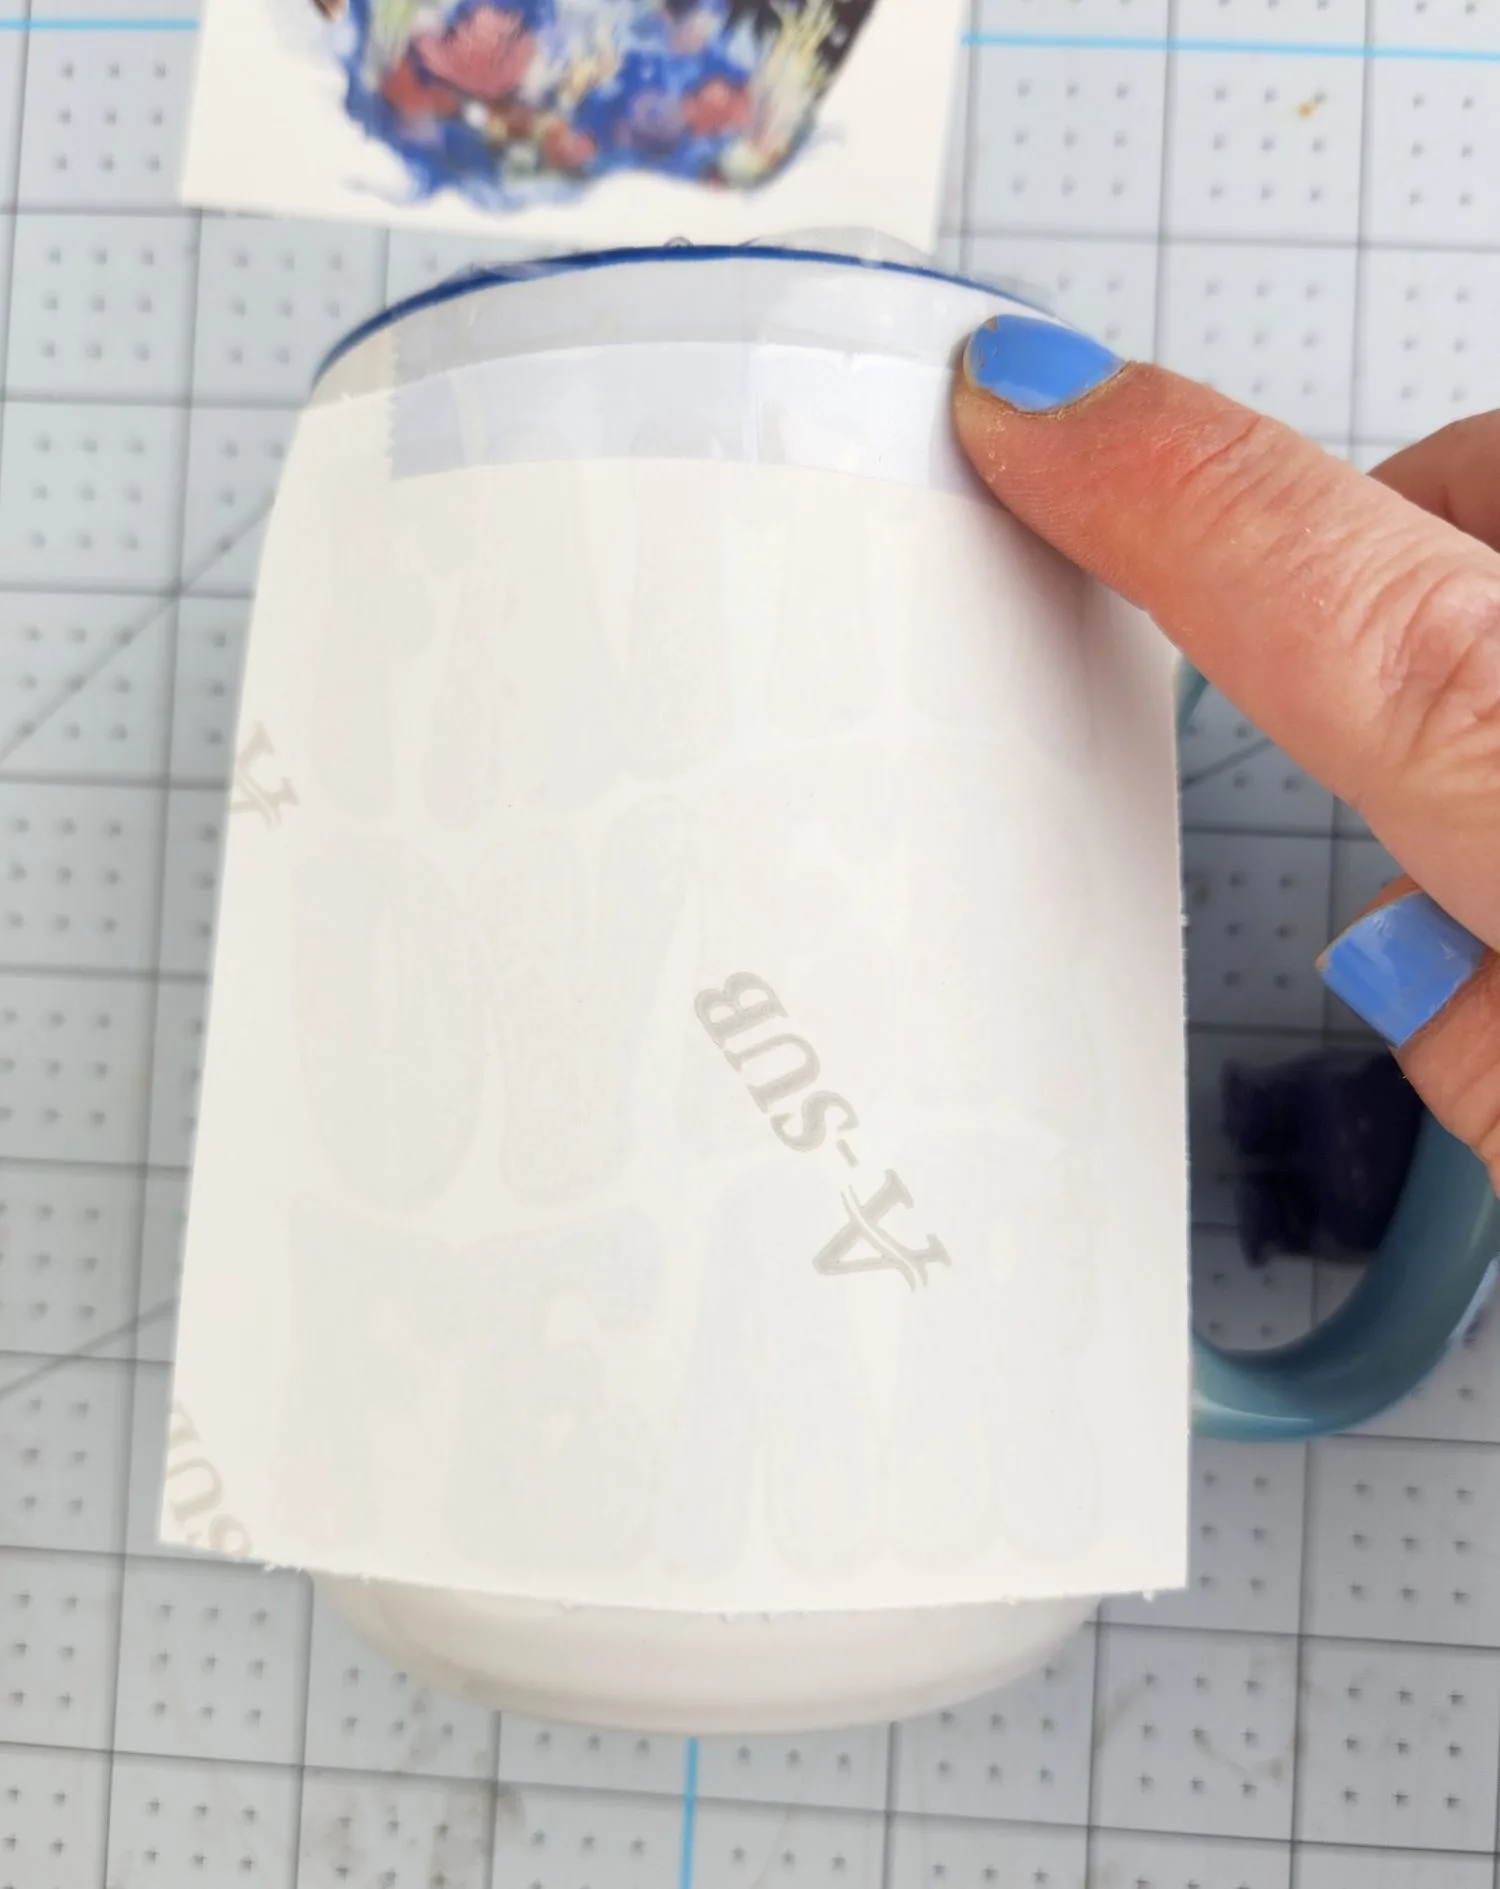 taping sublimation image on mug